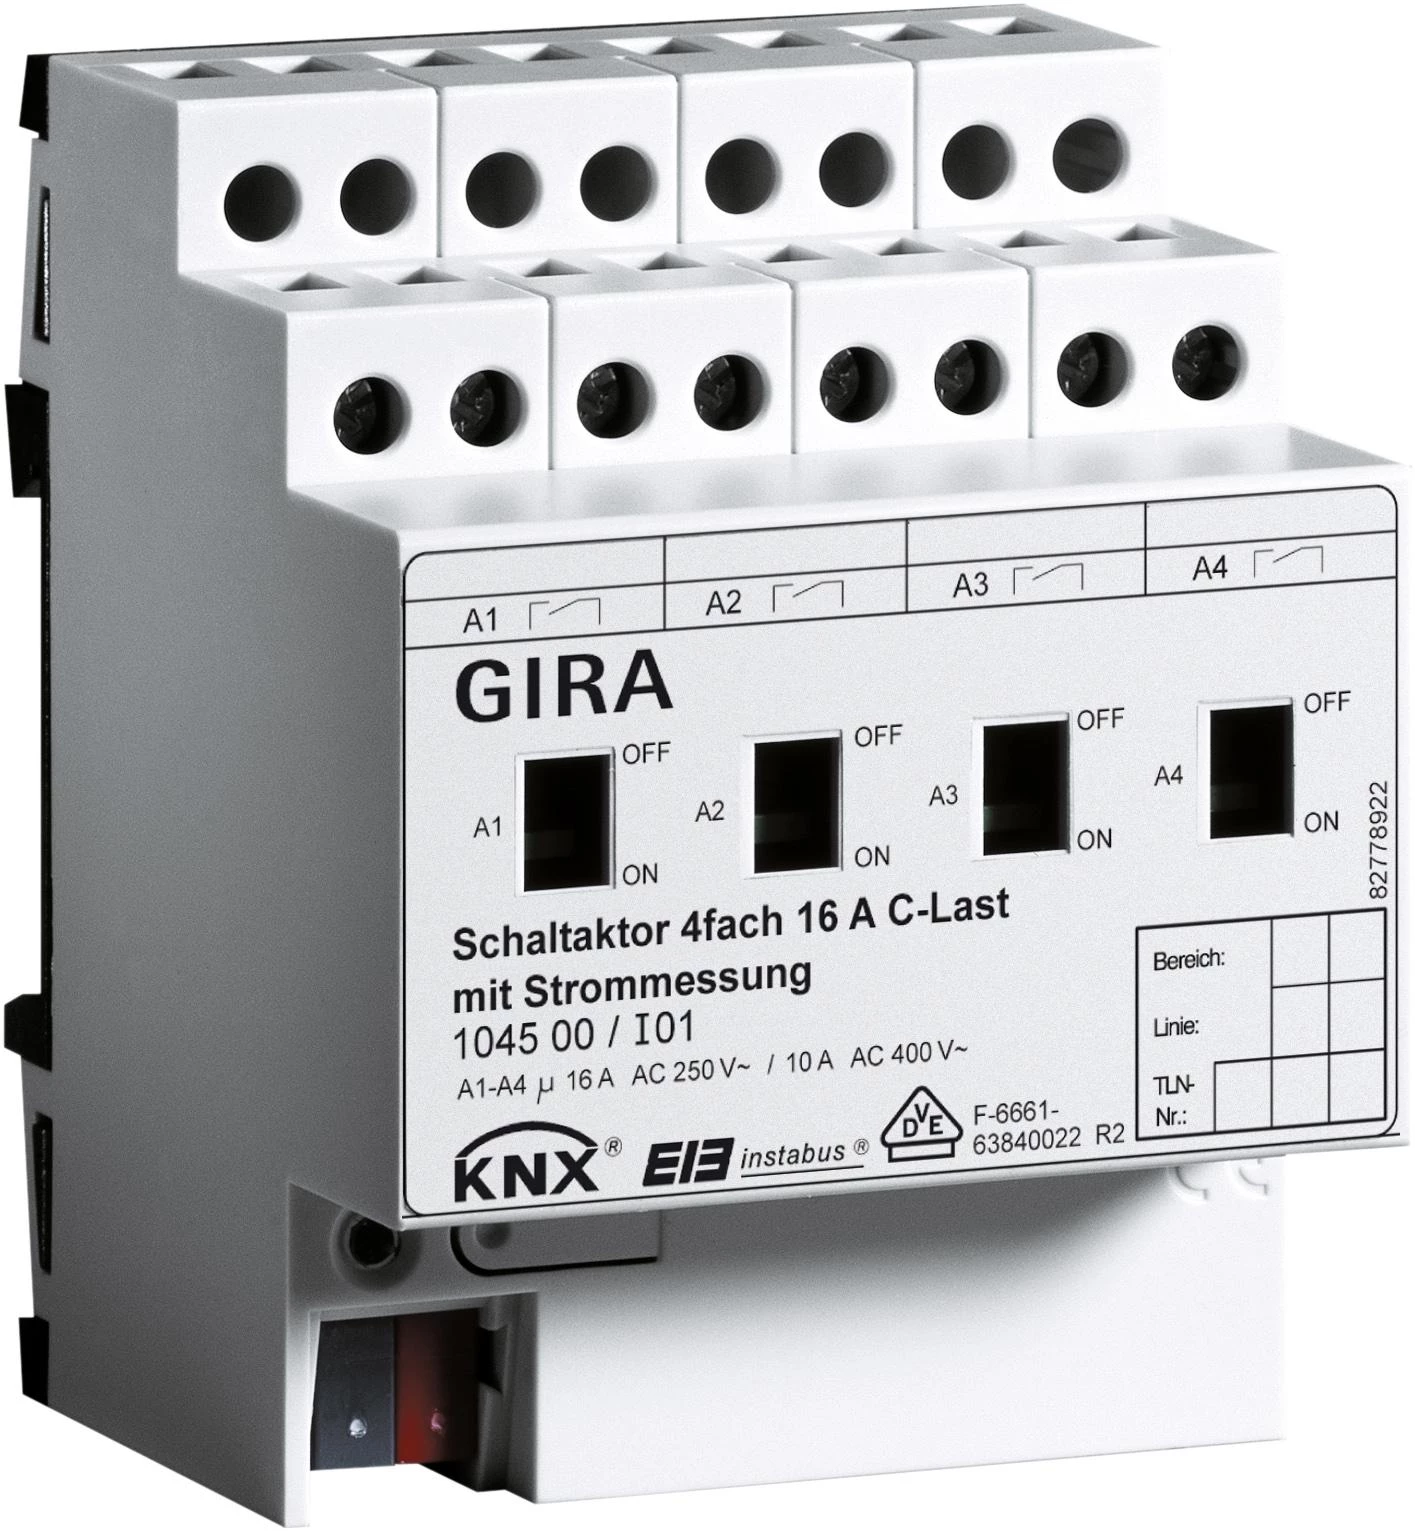  артикул 104500 название Gira Instabus Исполнительное устройство (реле) 4-х канальное,на DIN-рейку, 4 мод